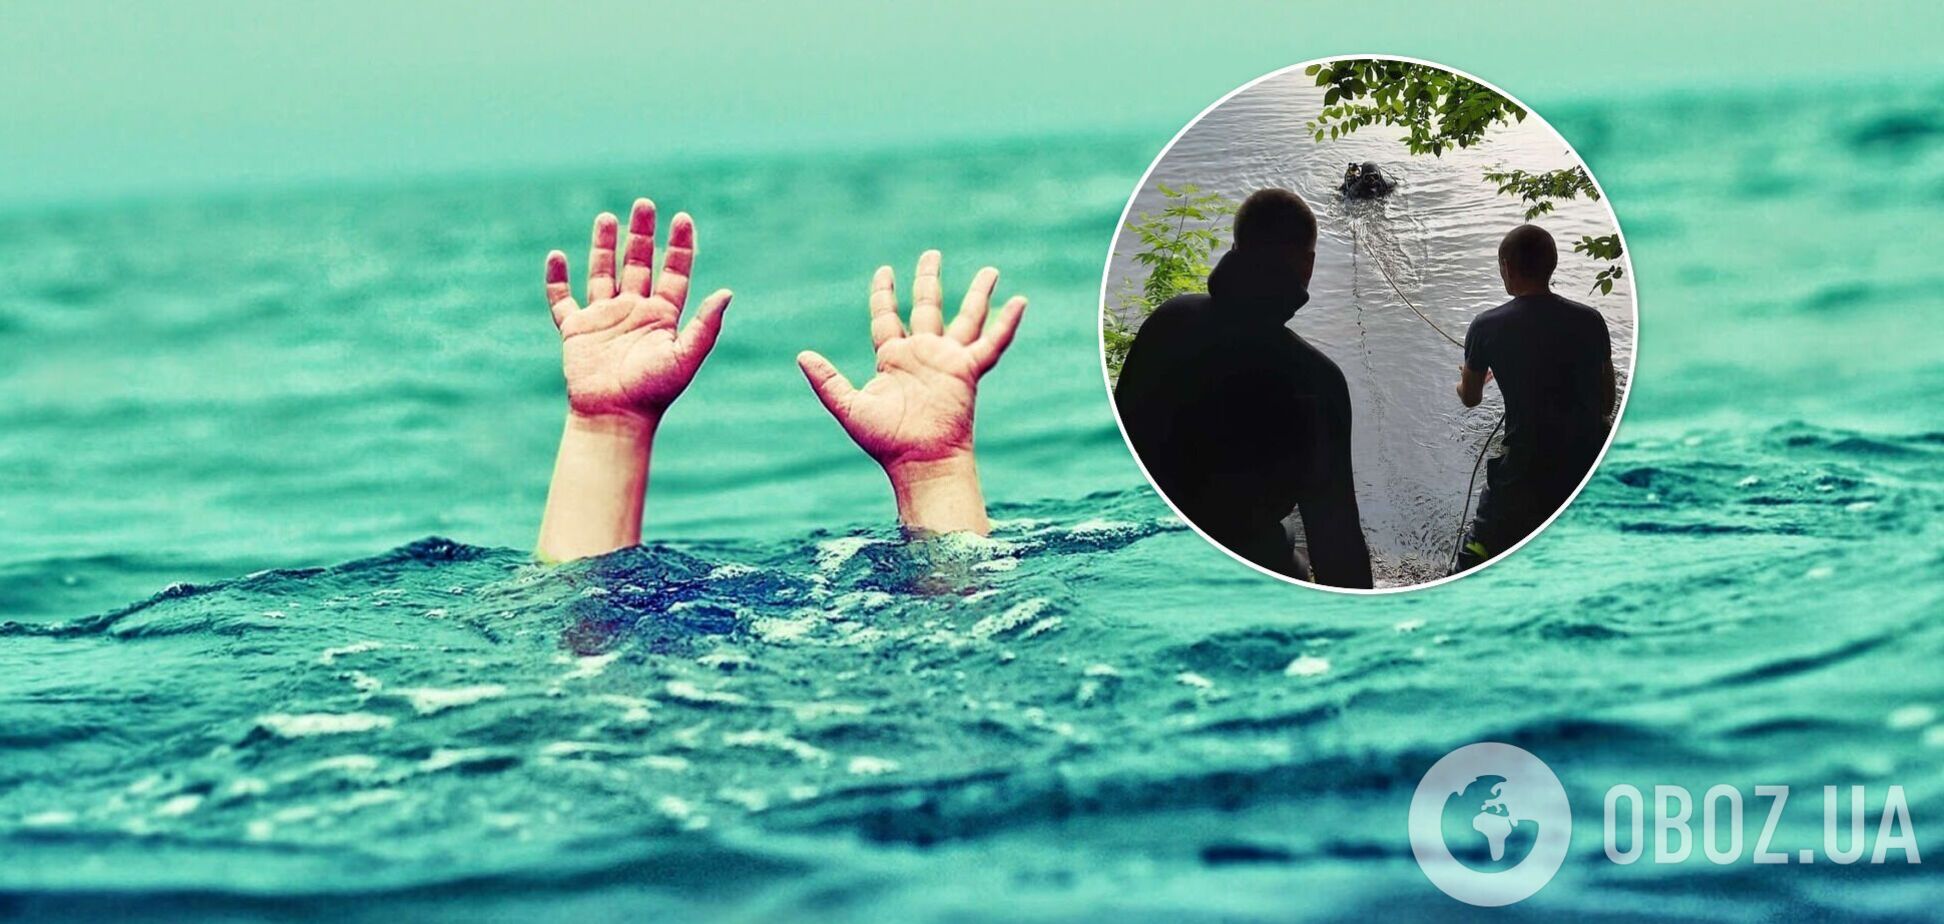 На Харьковщине на глазах брата утонул шестилетний мальчик